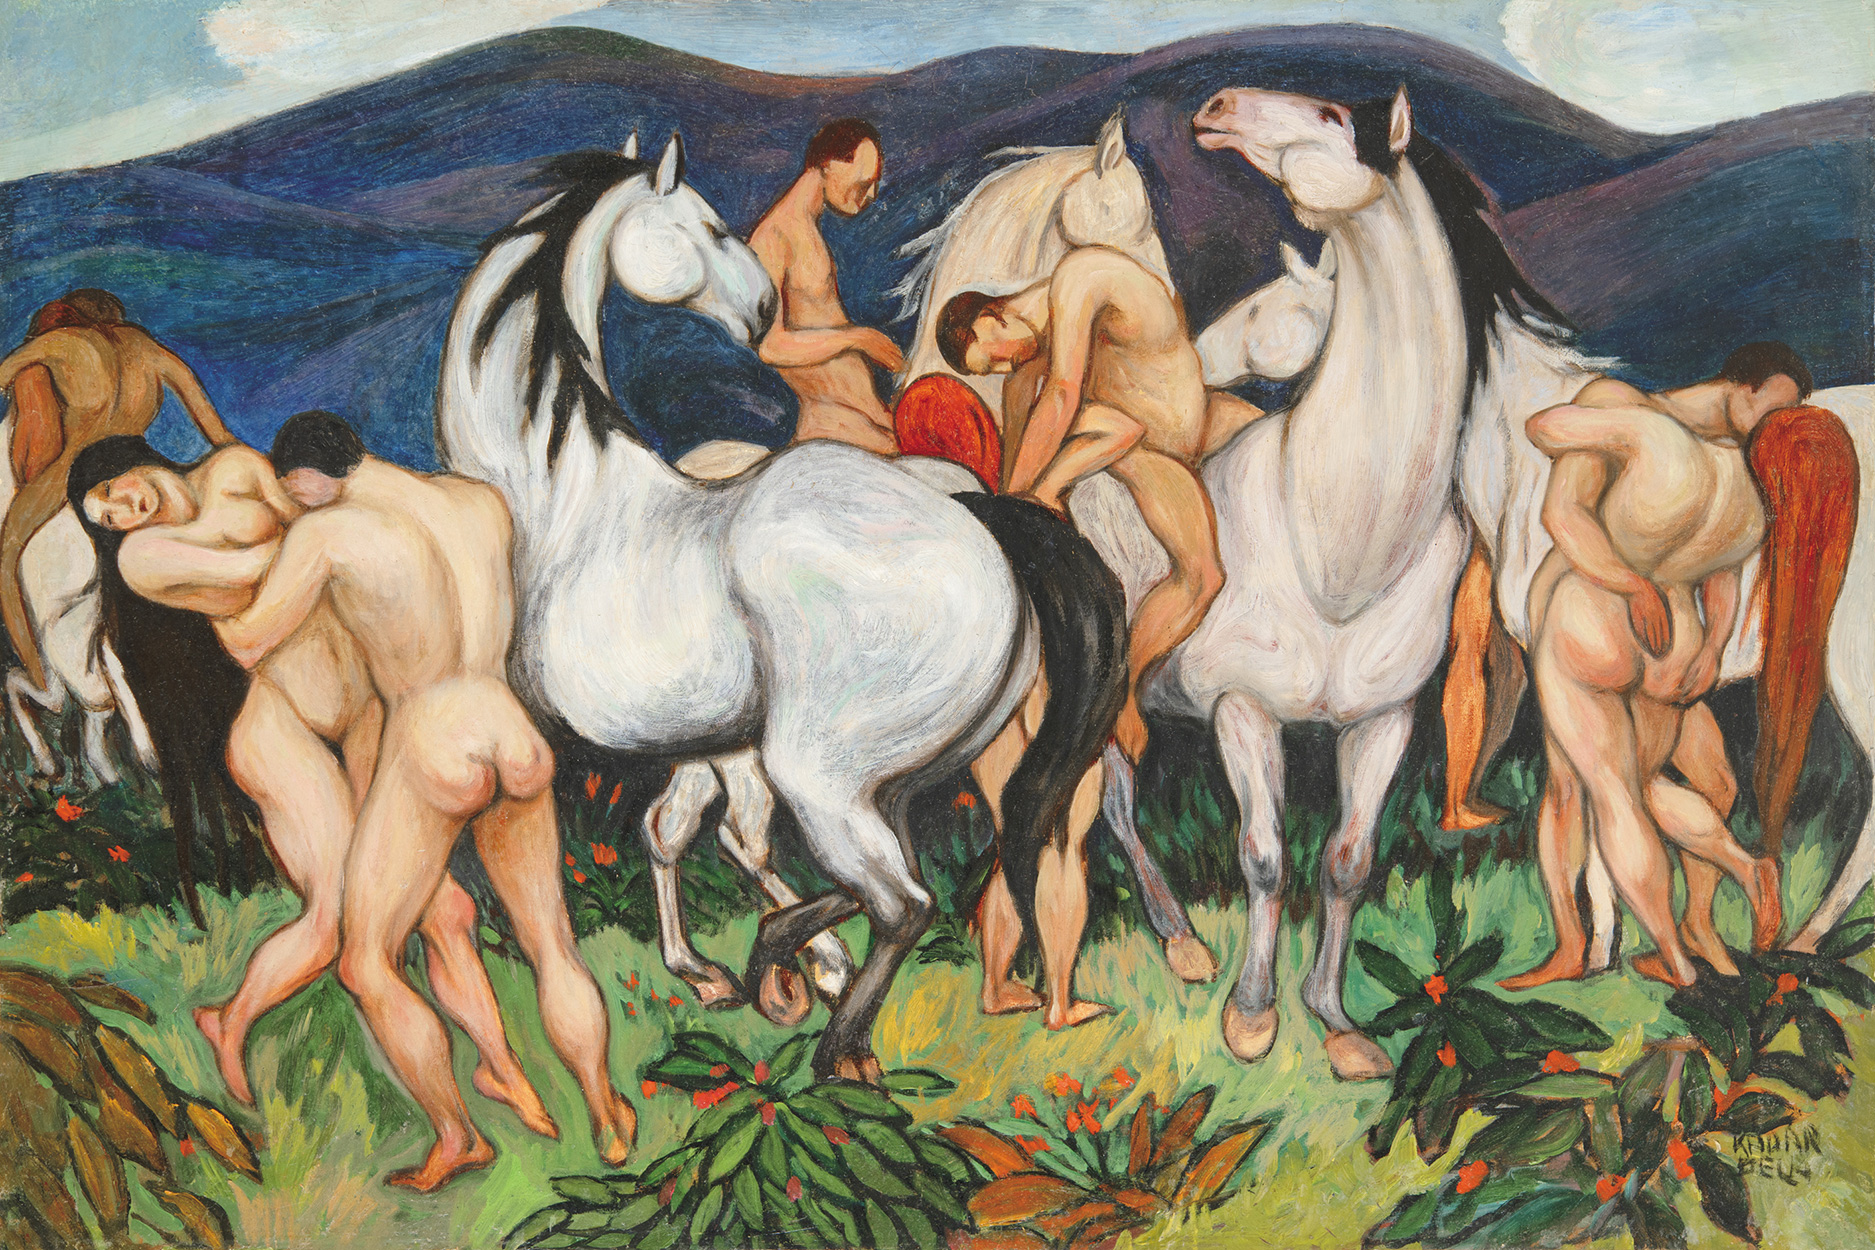 Kádár Béla (1877-1956) Nudes with Horses